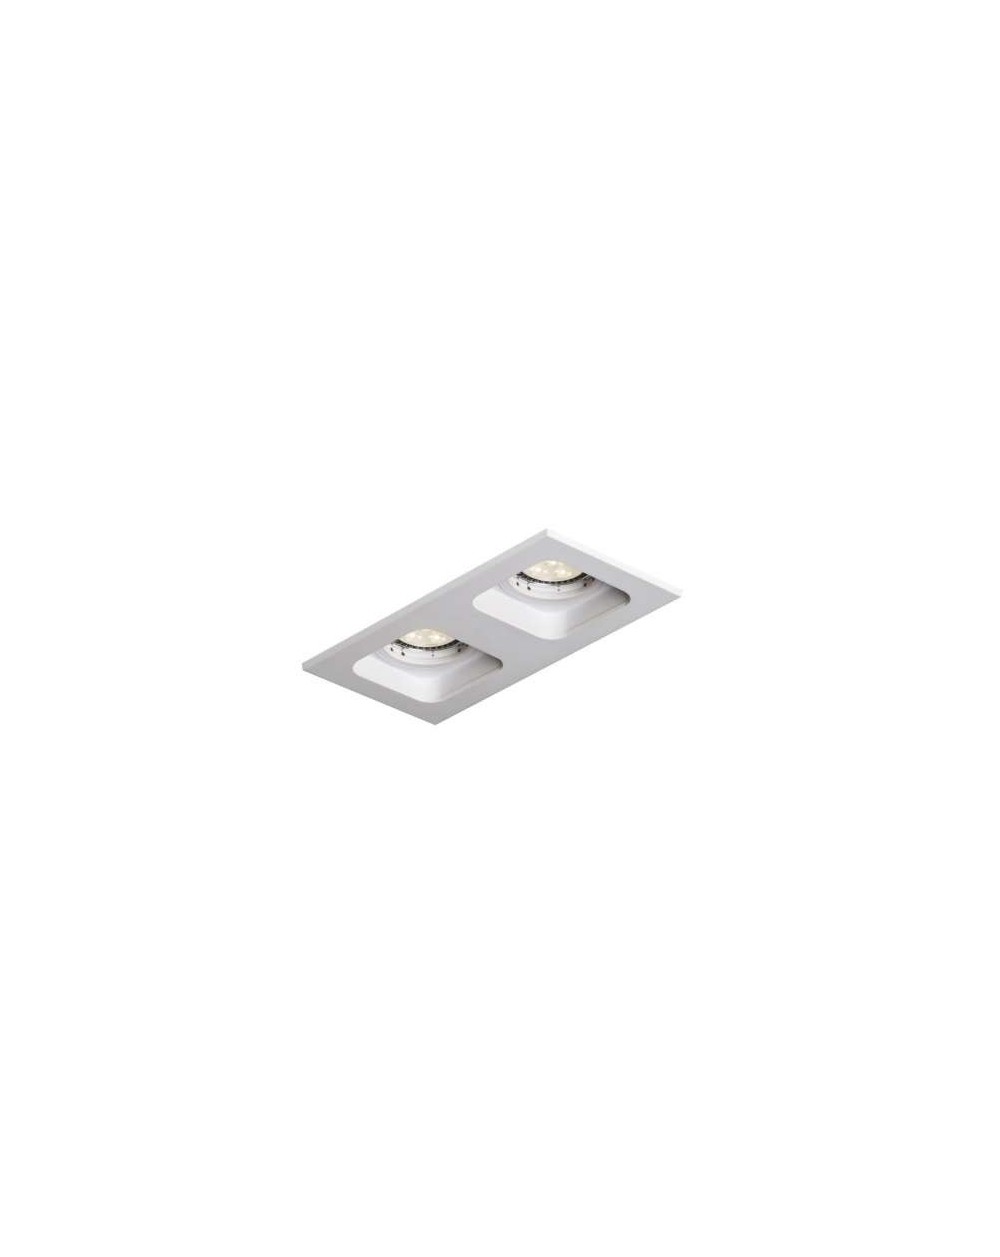 Lampa sufitowa DOUBLE Quad QR111 WP - Mistic Lighting oprawa wpuszczana prostokątna typu downlight do zabudowy w sufitach biała